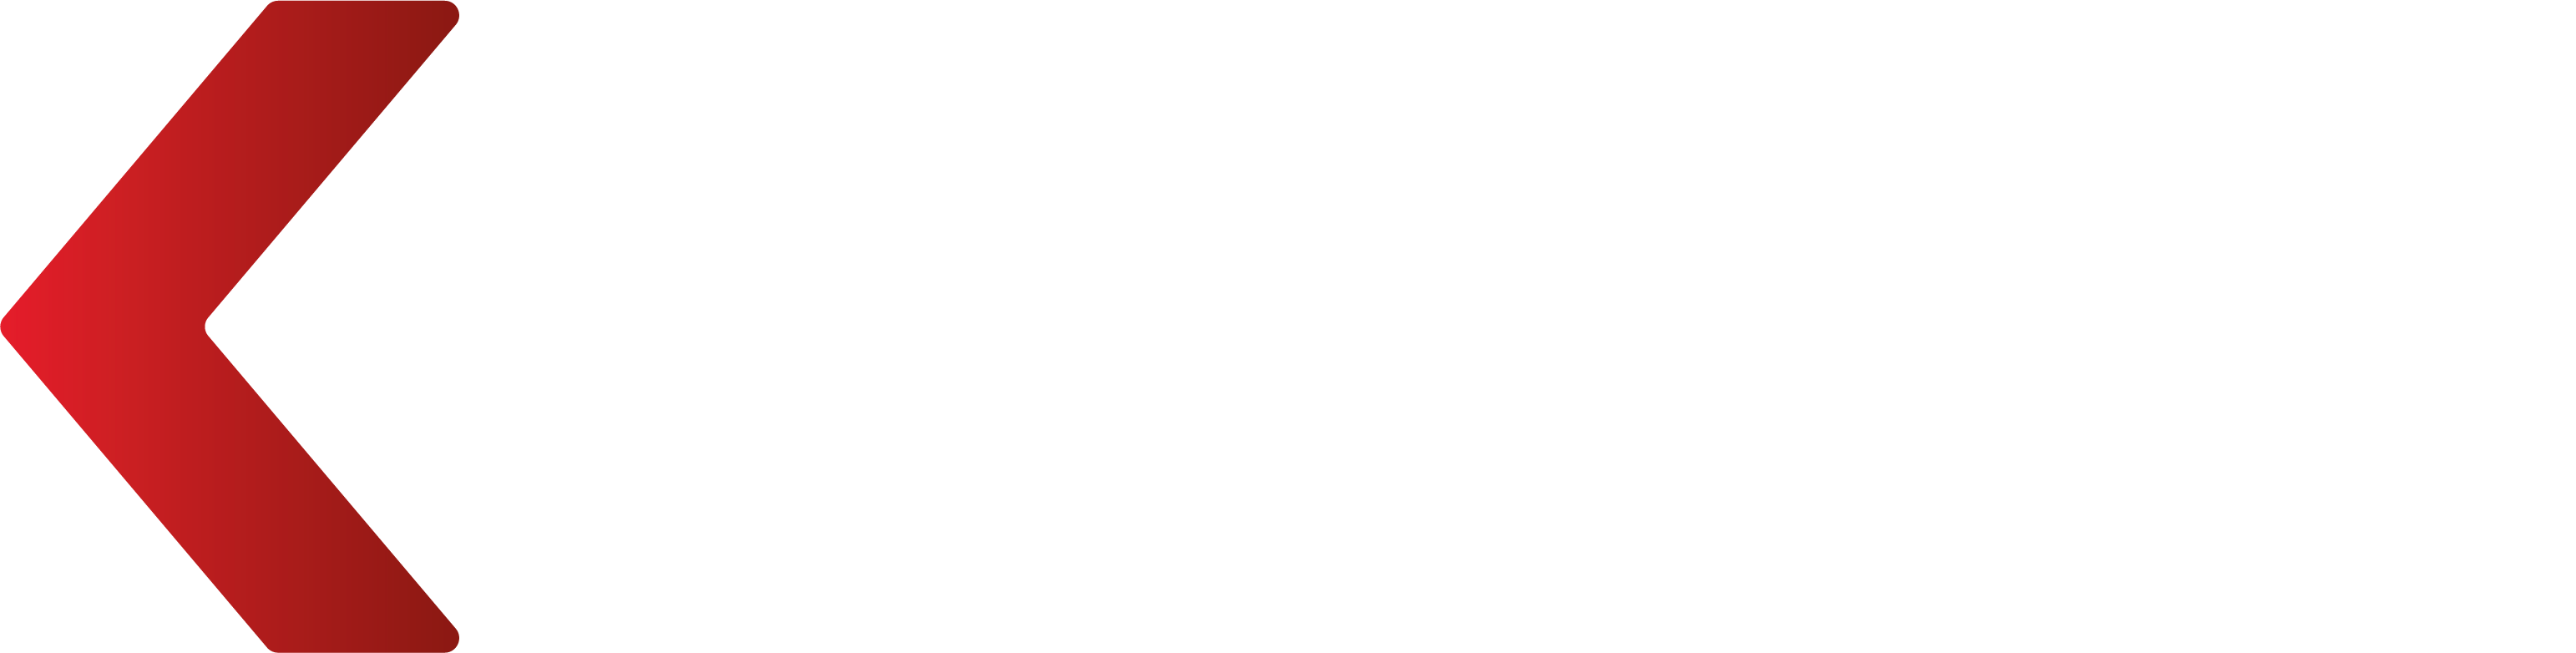 VK Design